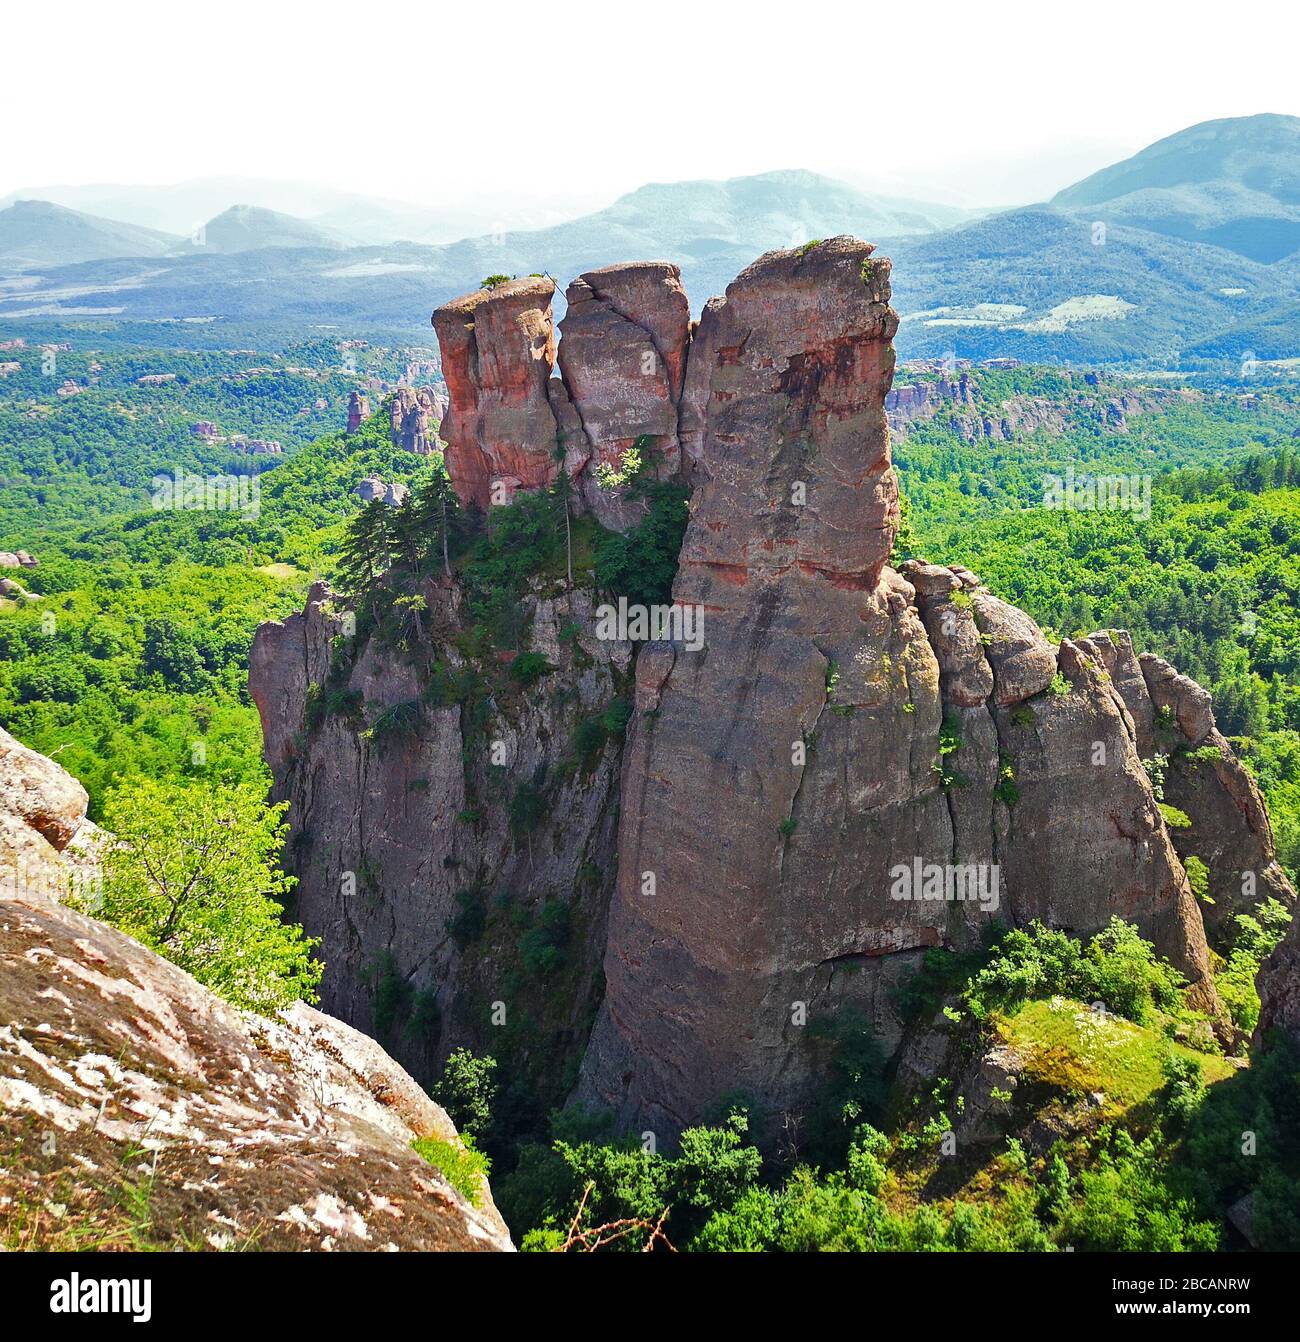 De grandes formations rocheuses qui s'épient de la forêt aux rochers de Belogradchick, en Bulgarie, un paysage bulgare incroyable dans le parc naturel autour de Kaleto, A. Banque D'Images